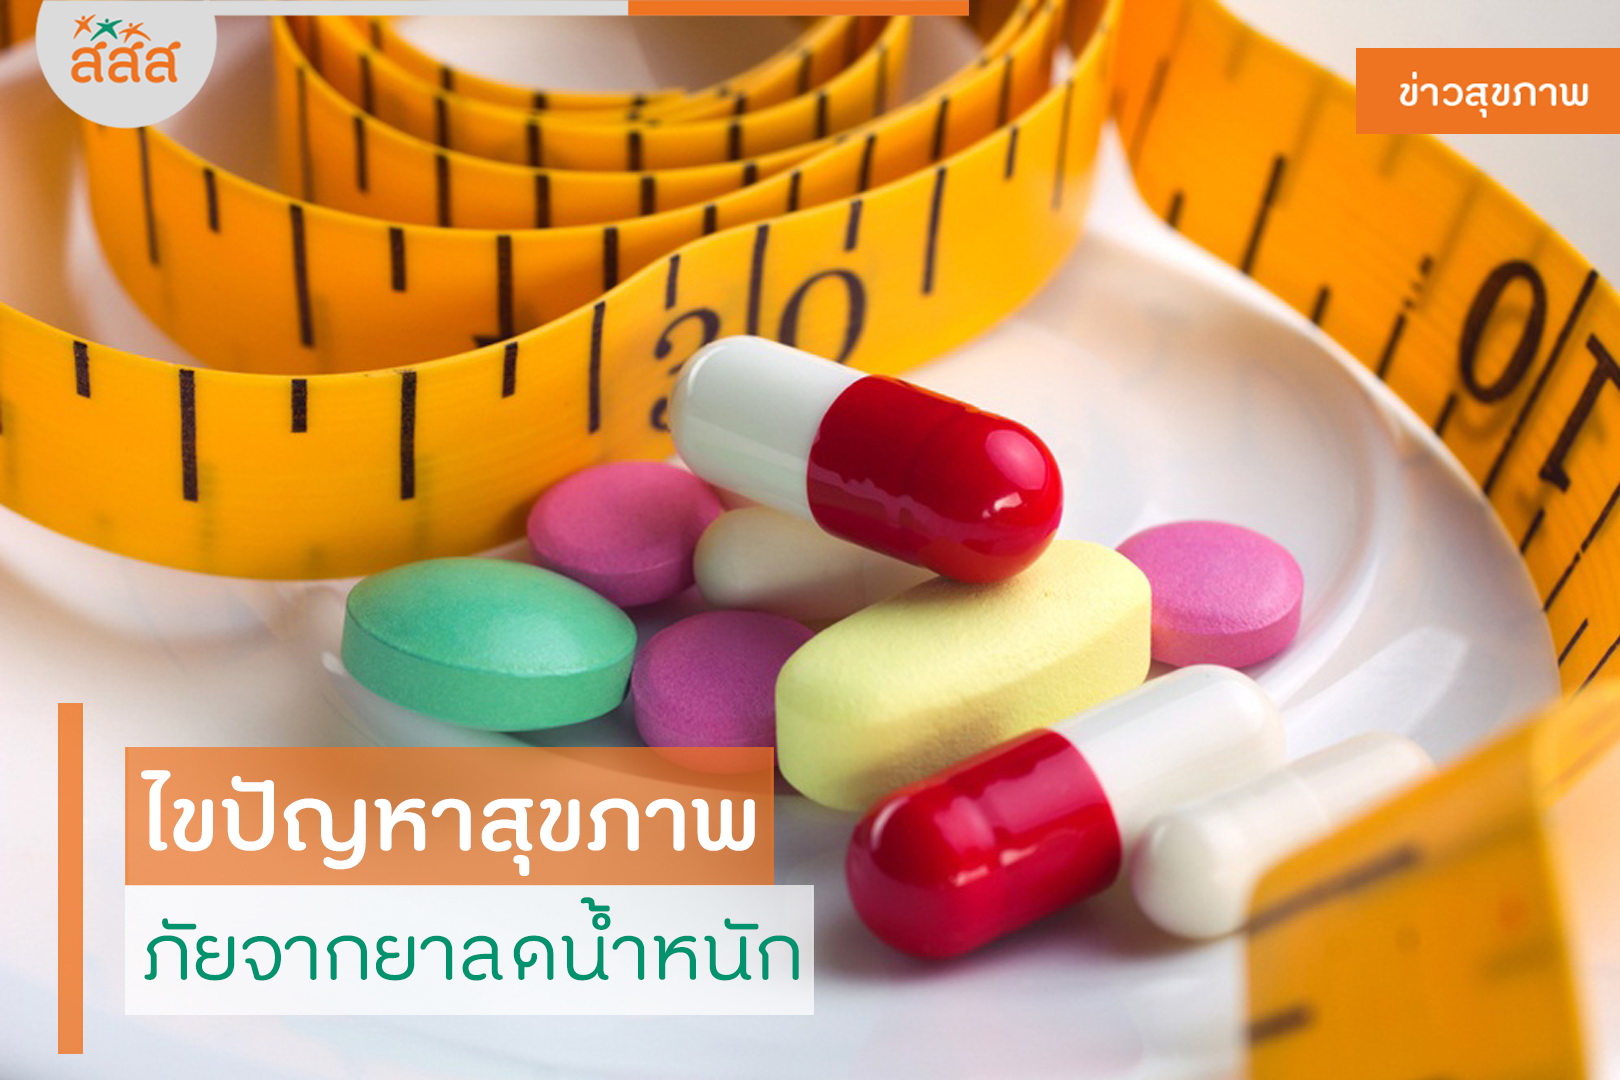 ไขปัญหาสุขภาพ ภัยจากยาลดน้ำหนัก thaihealth